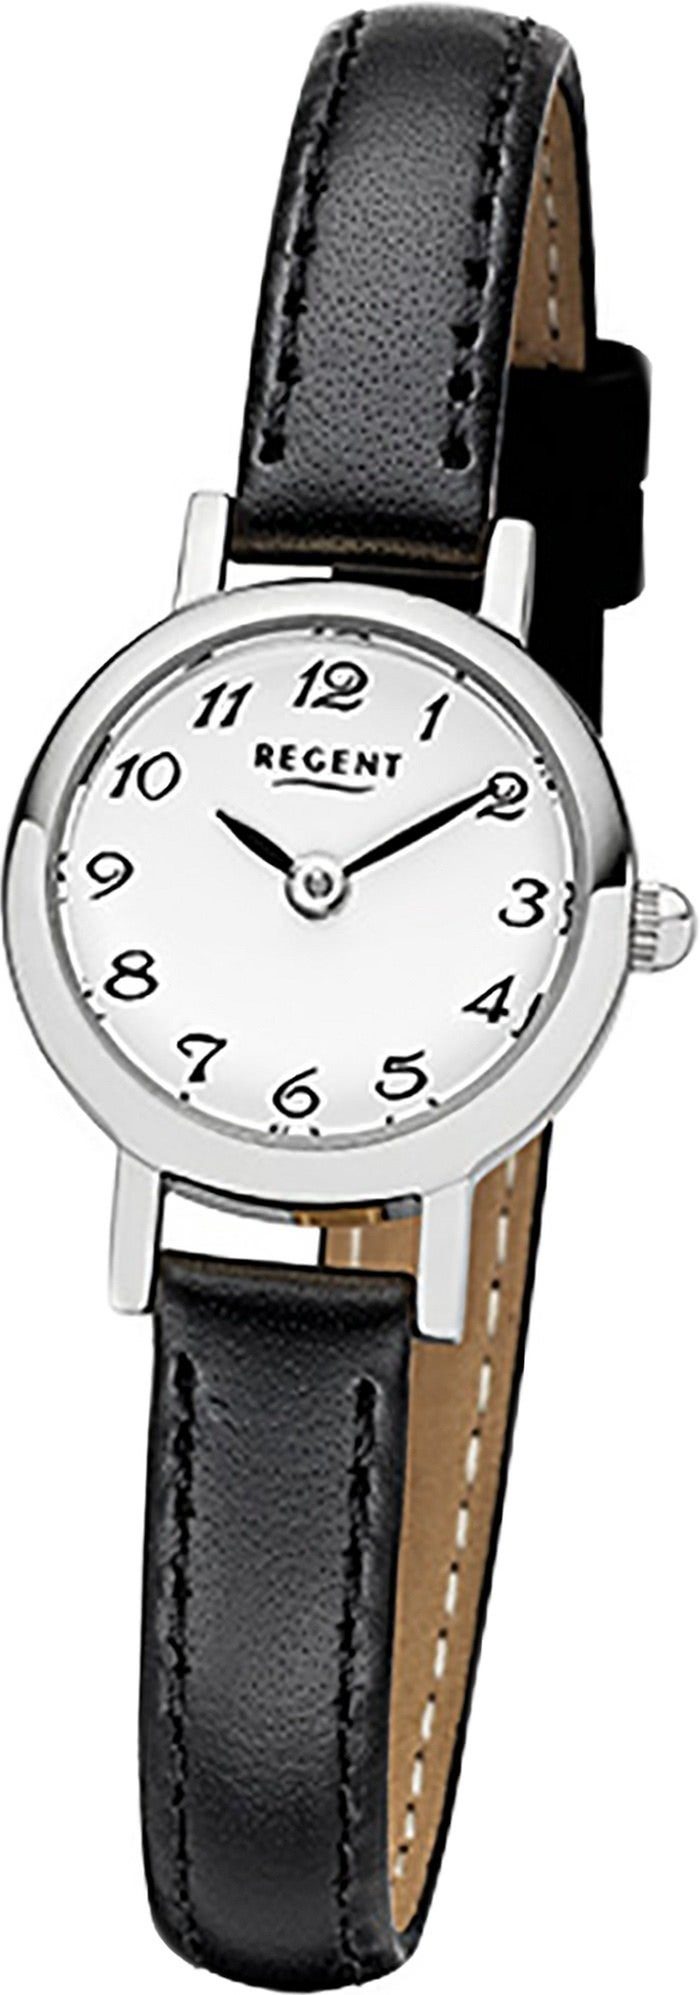 Regent Quarzuhr »D2URF979 Regent Leder Damen Uhr F-979 Quarzuhr«,  (Quarzuhr), Damenuhr mit Lederarmband, rundes Gehäuse, klein (ca. 20mm),  Elegant-Style online kaufen | OTTO